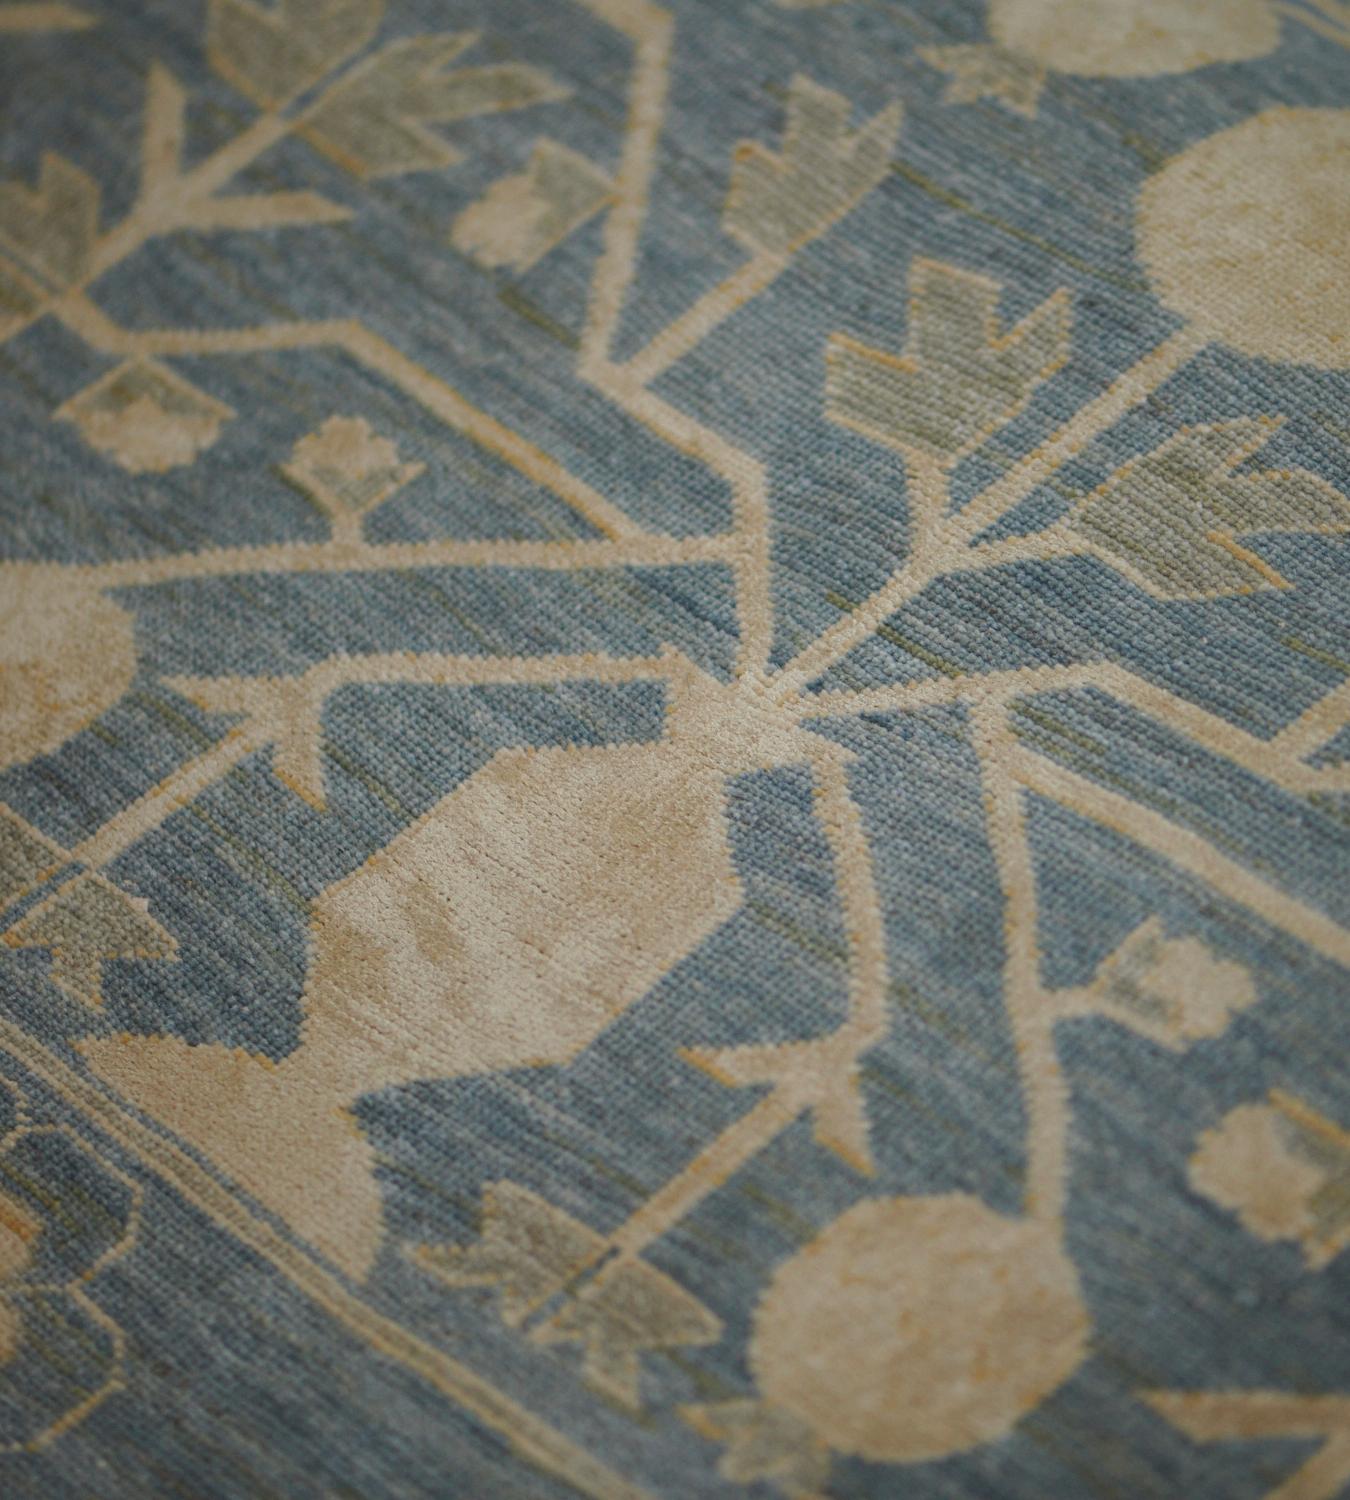 Dieser Khotan-Teppich aus Wolle und Seide zeigt ein schattiertes blaues Feld mit einem Gesamtmuster aus buff-braunen Granatäpfeln, die durch eckige Blattranken miteinander verbunden sind, in einer doppelt gestreiften Bordüre, wobei der innere